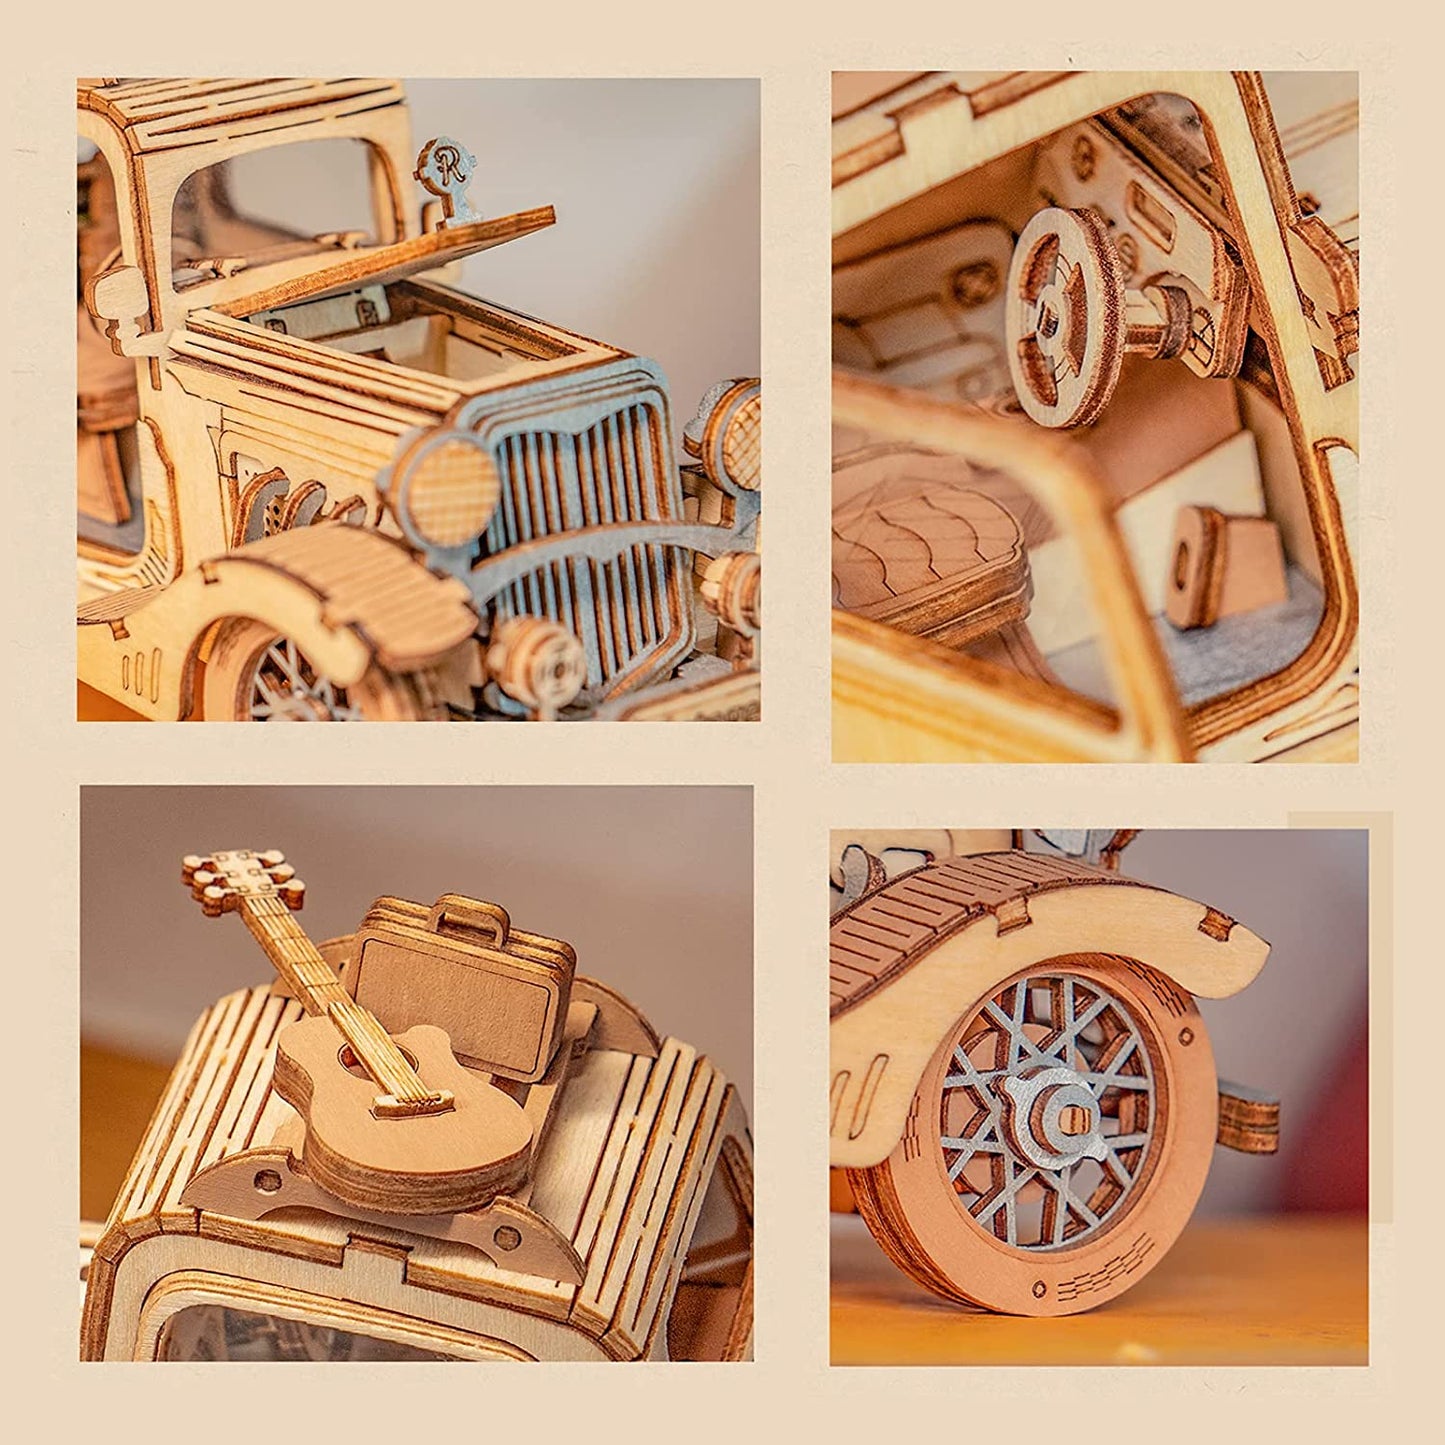 Robotime Rolife Vintage Car Model 3D Wooden Puzzle Toys For Chilidren Kids